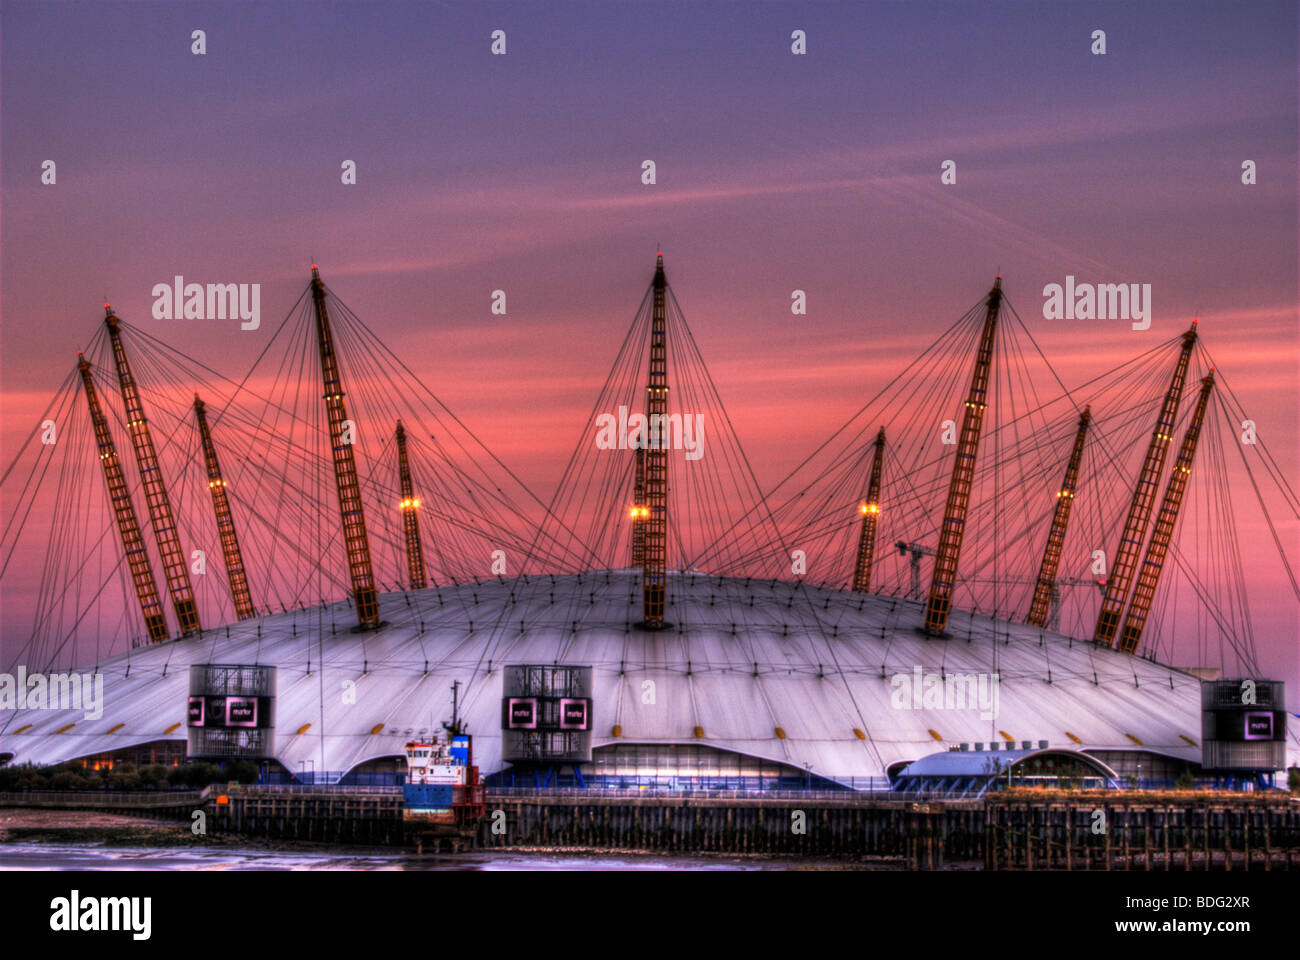 HDR - High Dynamic Range Immagine dell'arena O2, Docklands, Londra, Inghilterra, Regno Unito Foto Stock